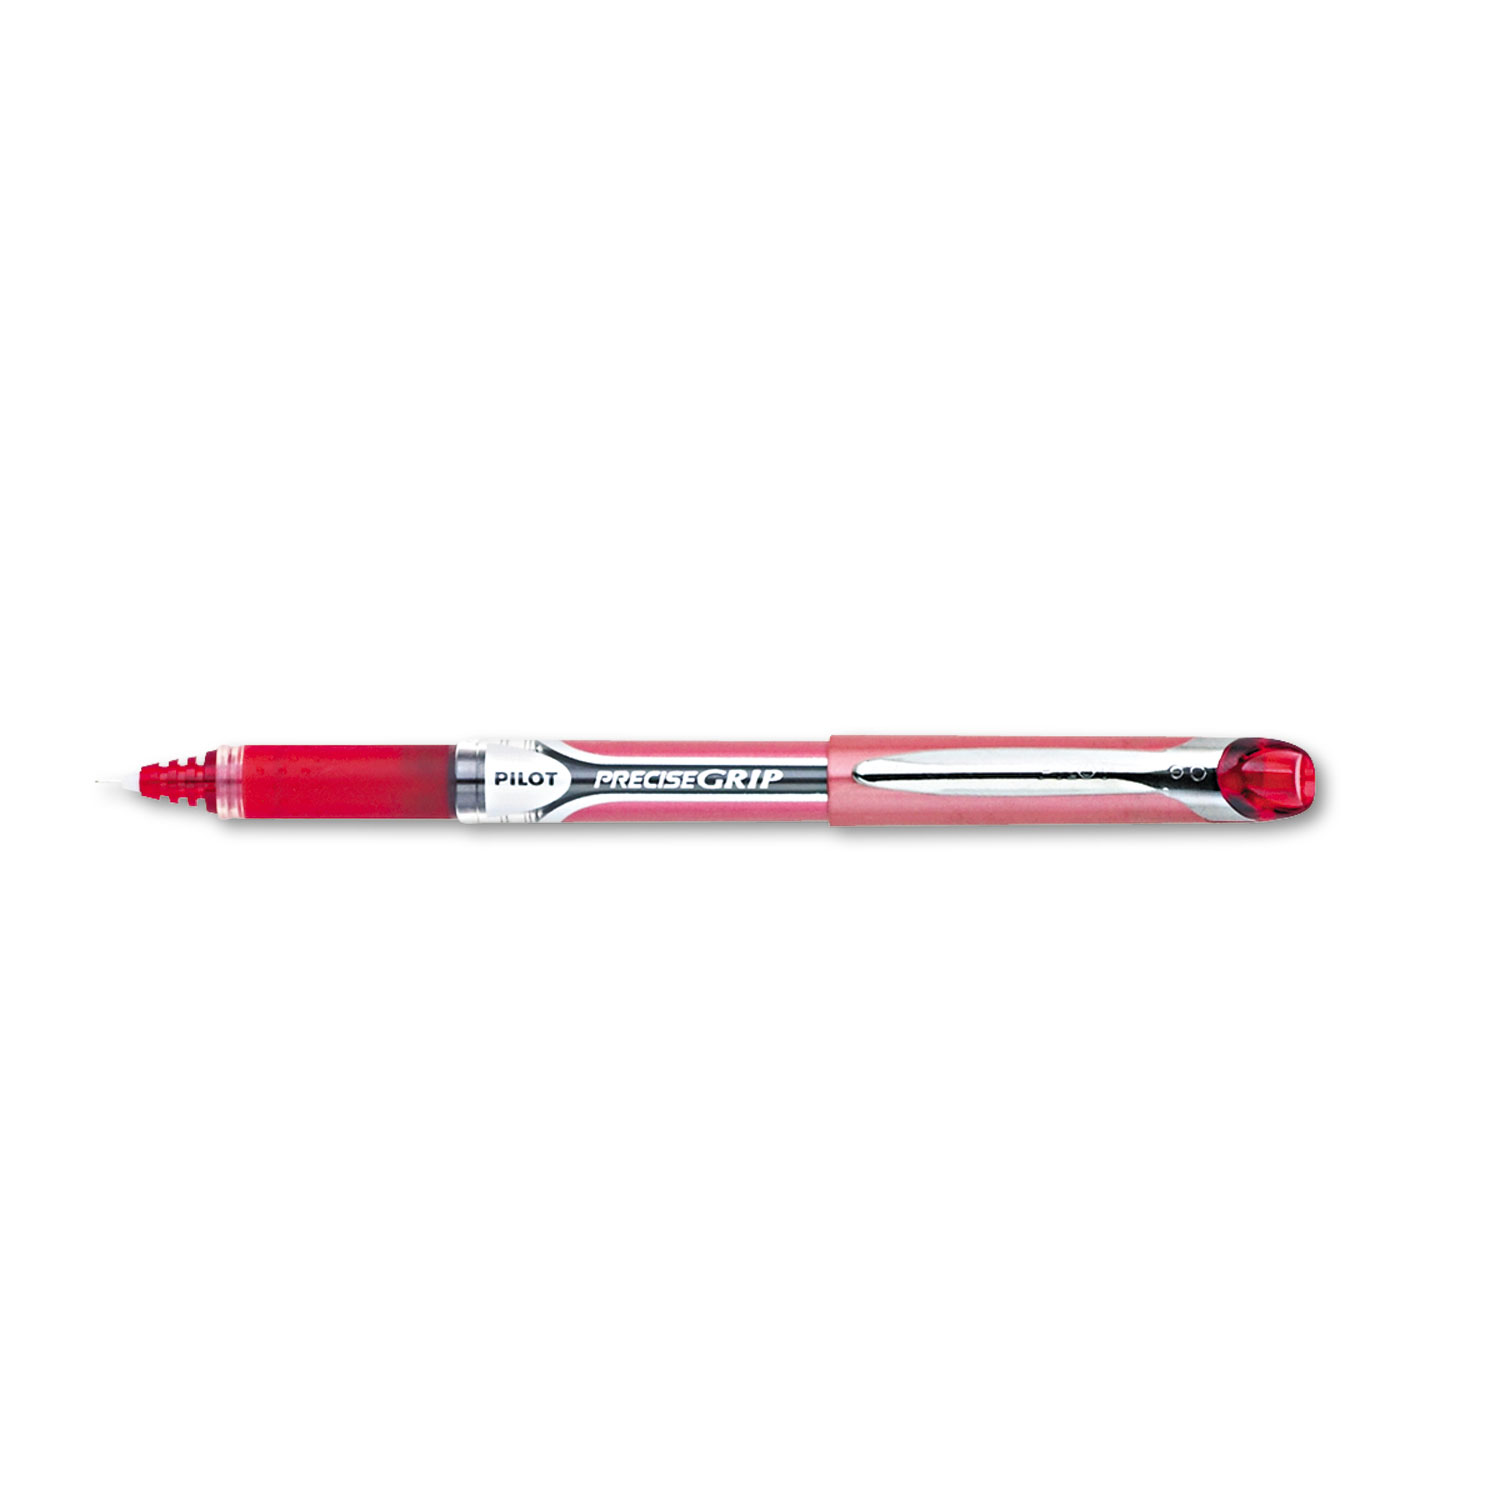 Precise Grip Roller Ball Stick Pen, Red Ink, .5mm